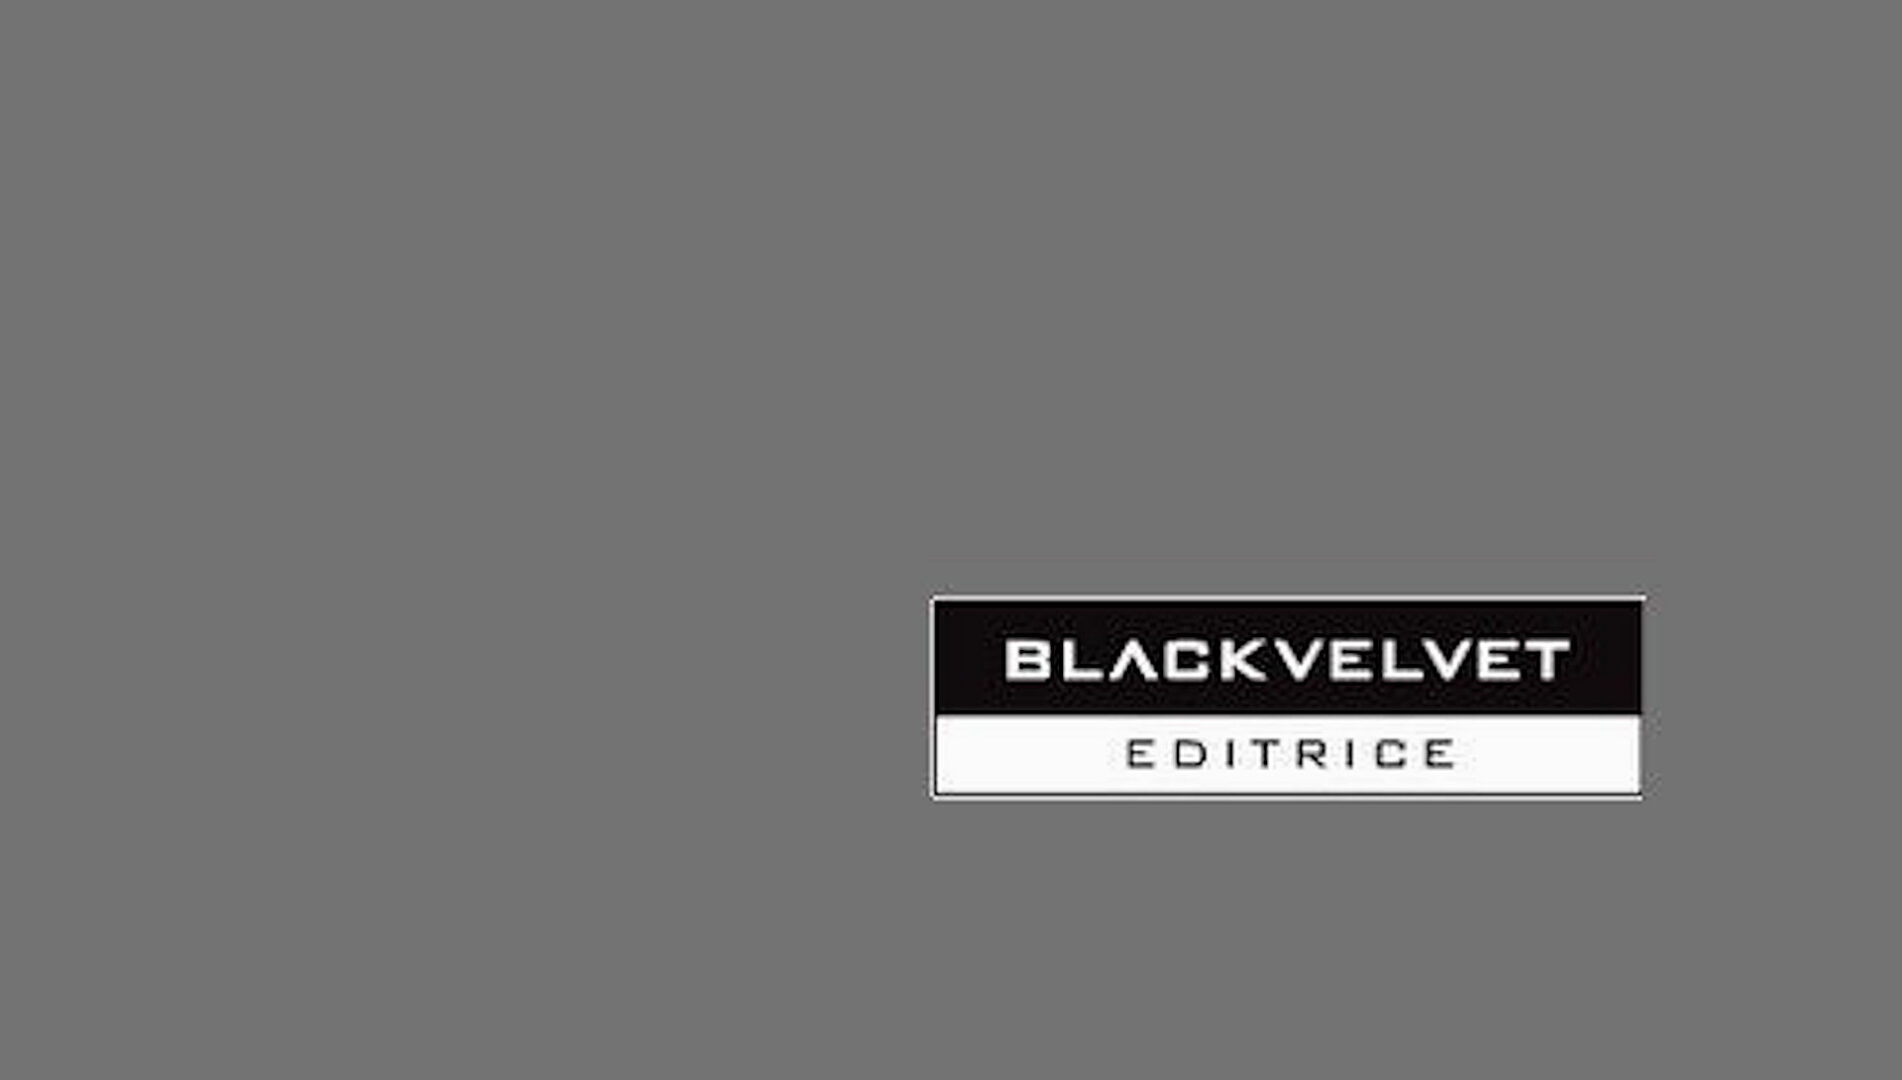 Black Velvet Editrice: Un nuovo inizio nel segno della continuità